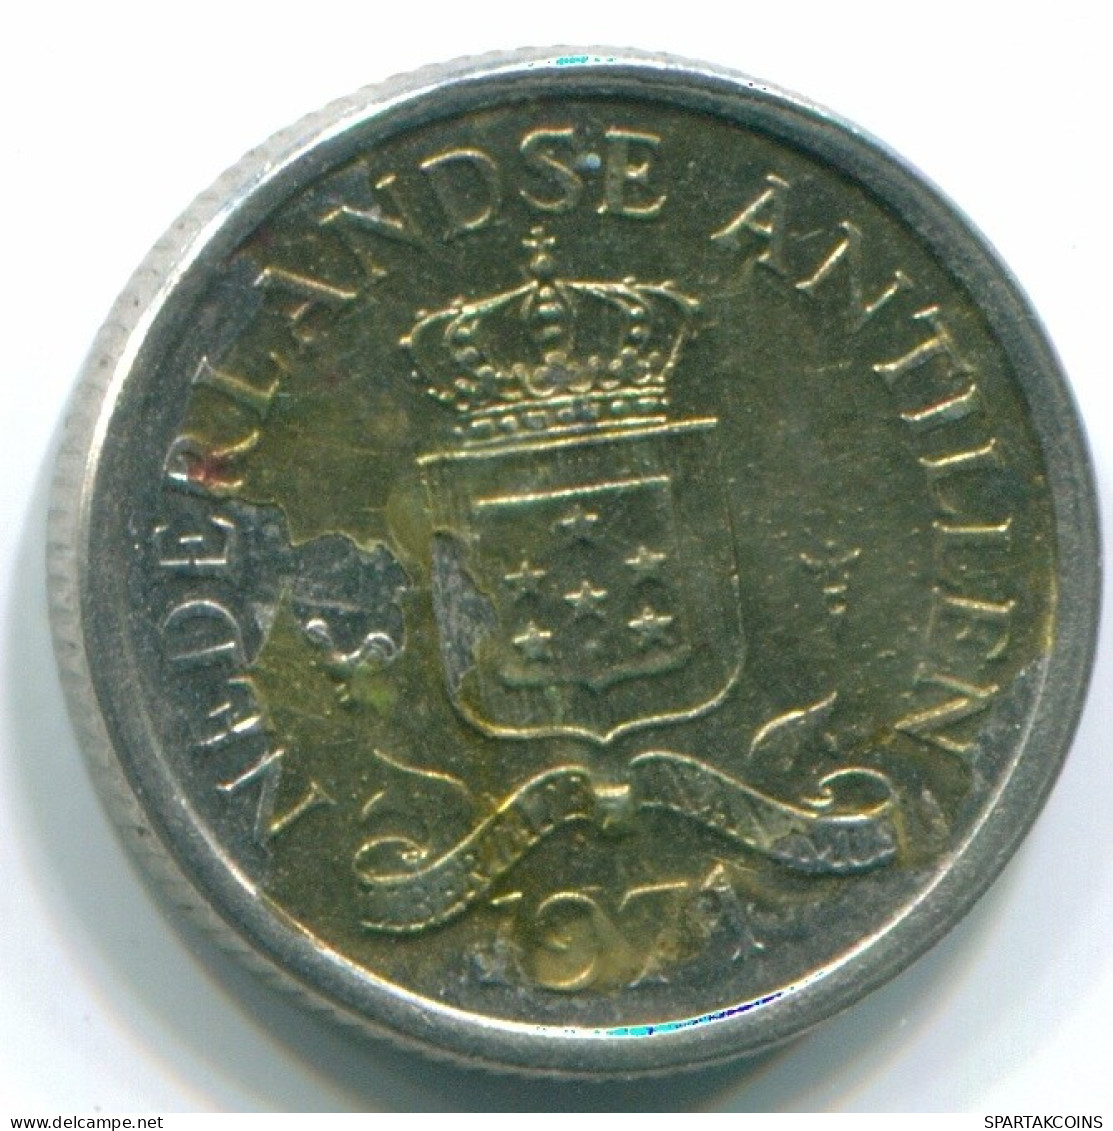 10 CENTS 1971 NIEDERLÄNDISCHE ANTILLEN Nickel Koloniale Münze #S13457.D.A - Niederländische Antillen